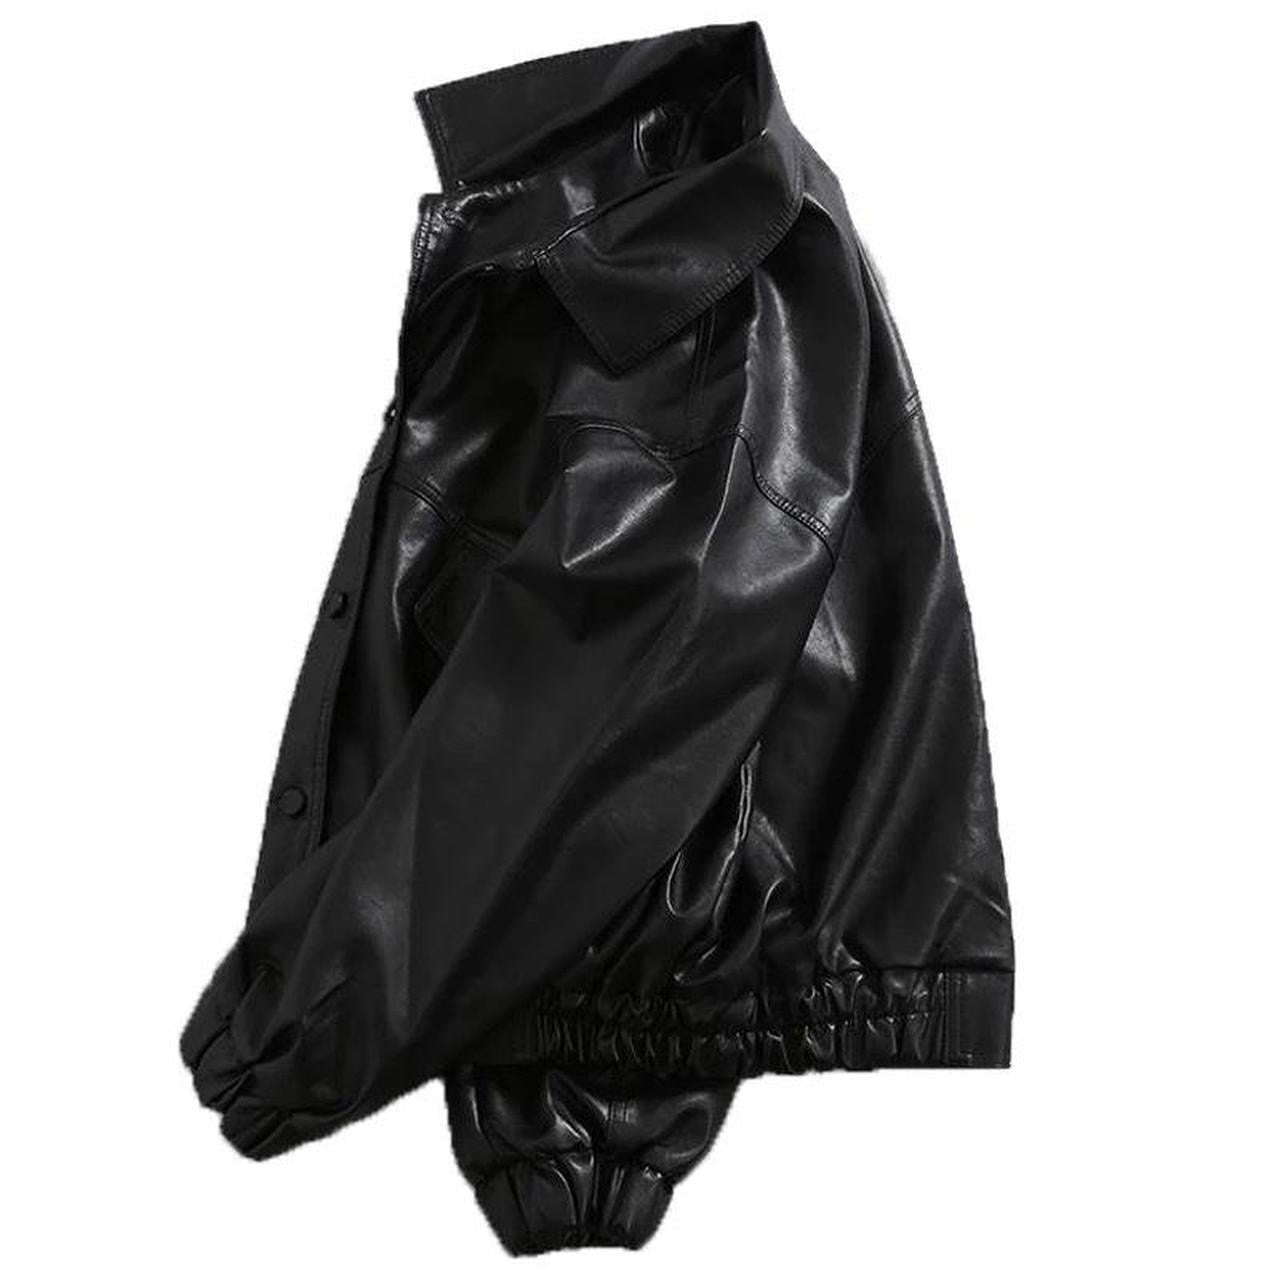 Black Faux Leather Retro Style Bomber Jacket